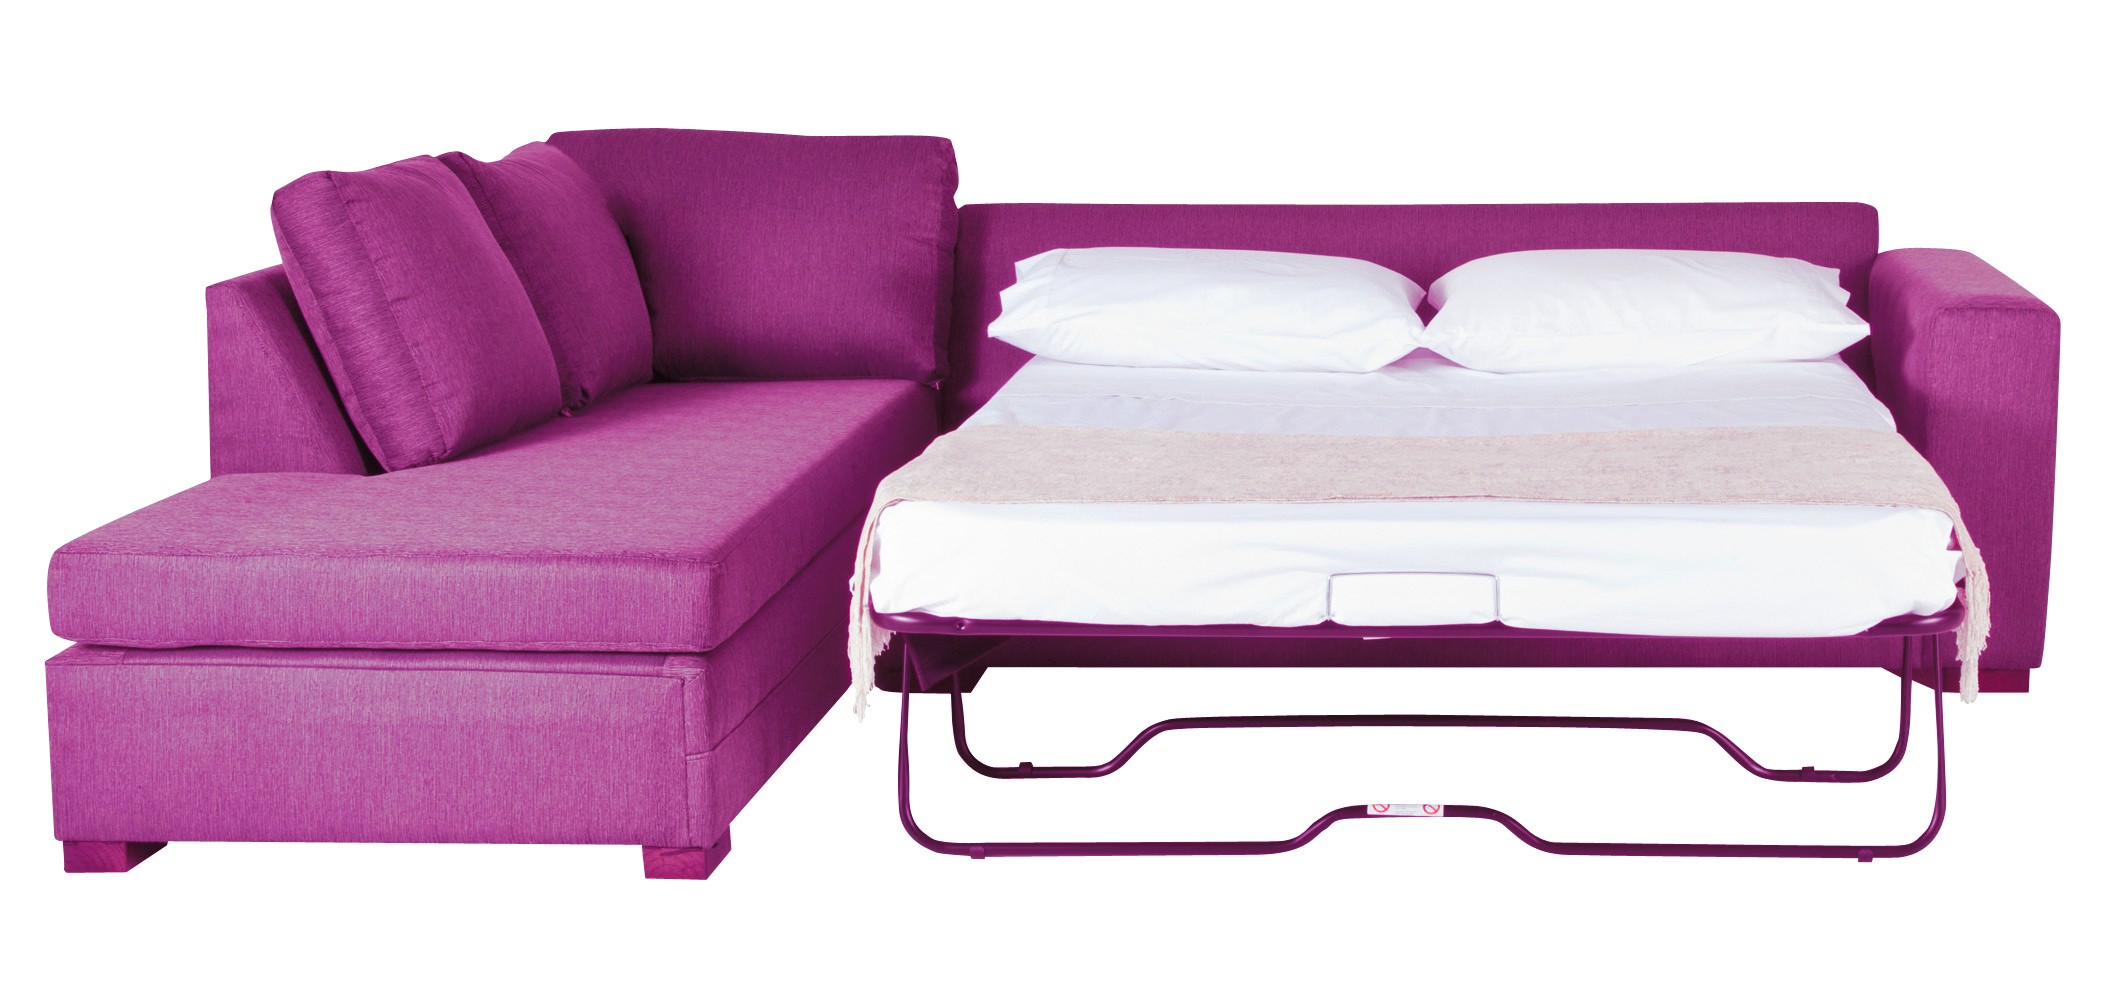 ортопедические диваны кровати для ежедневного использования